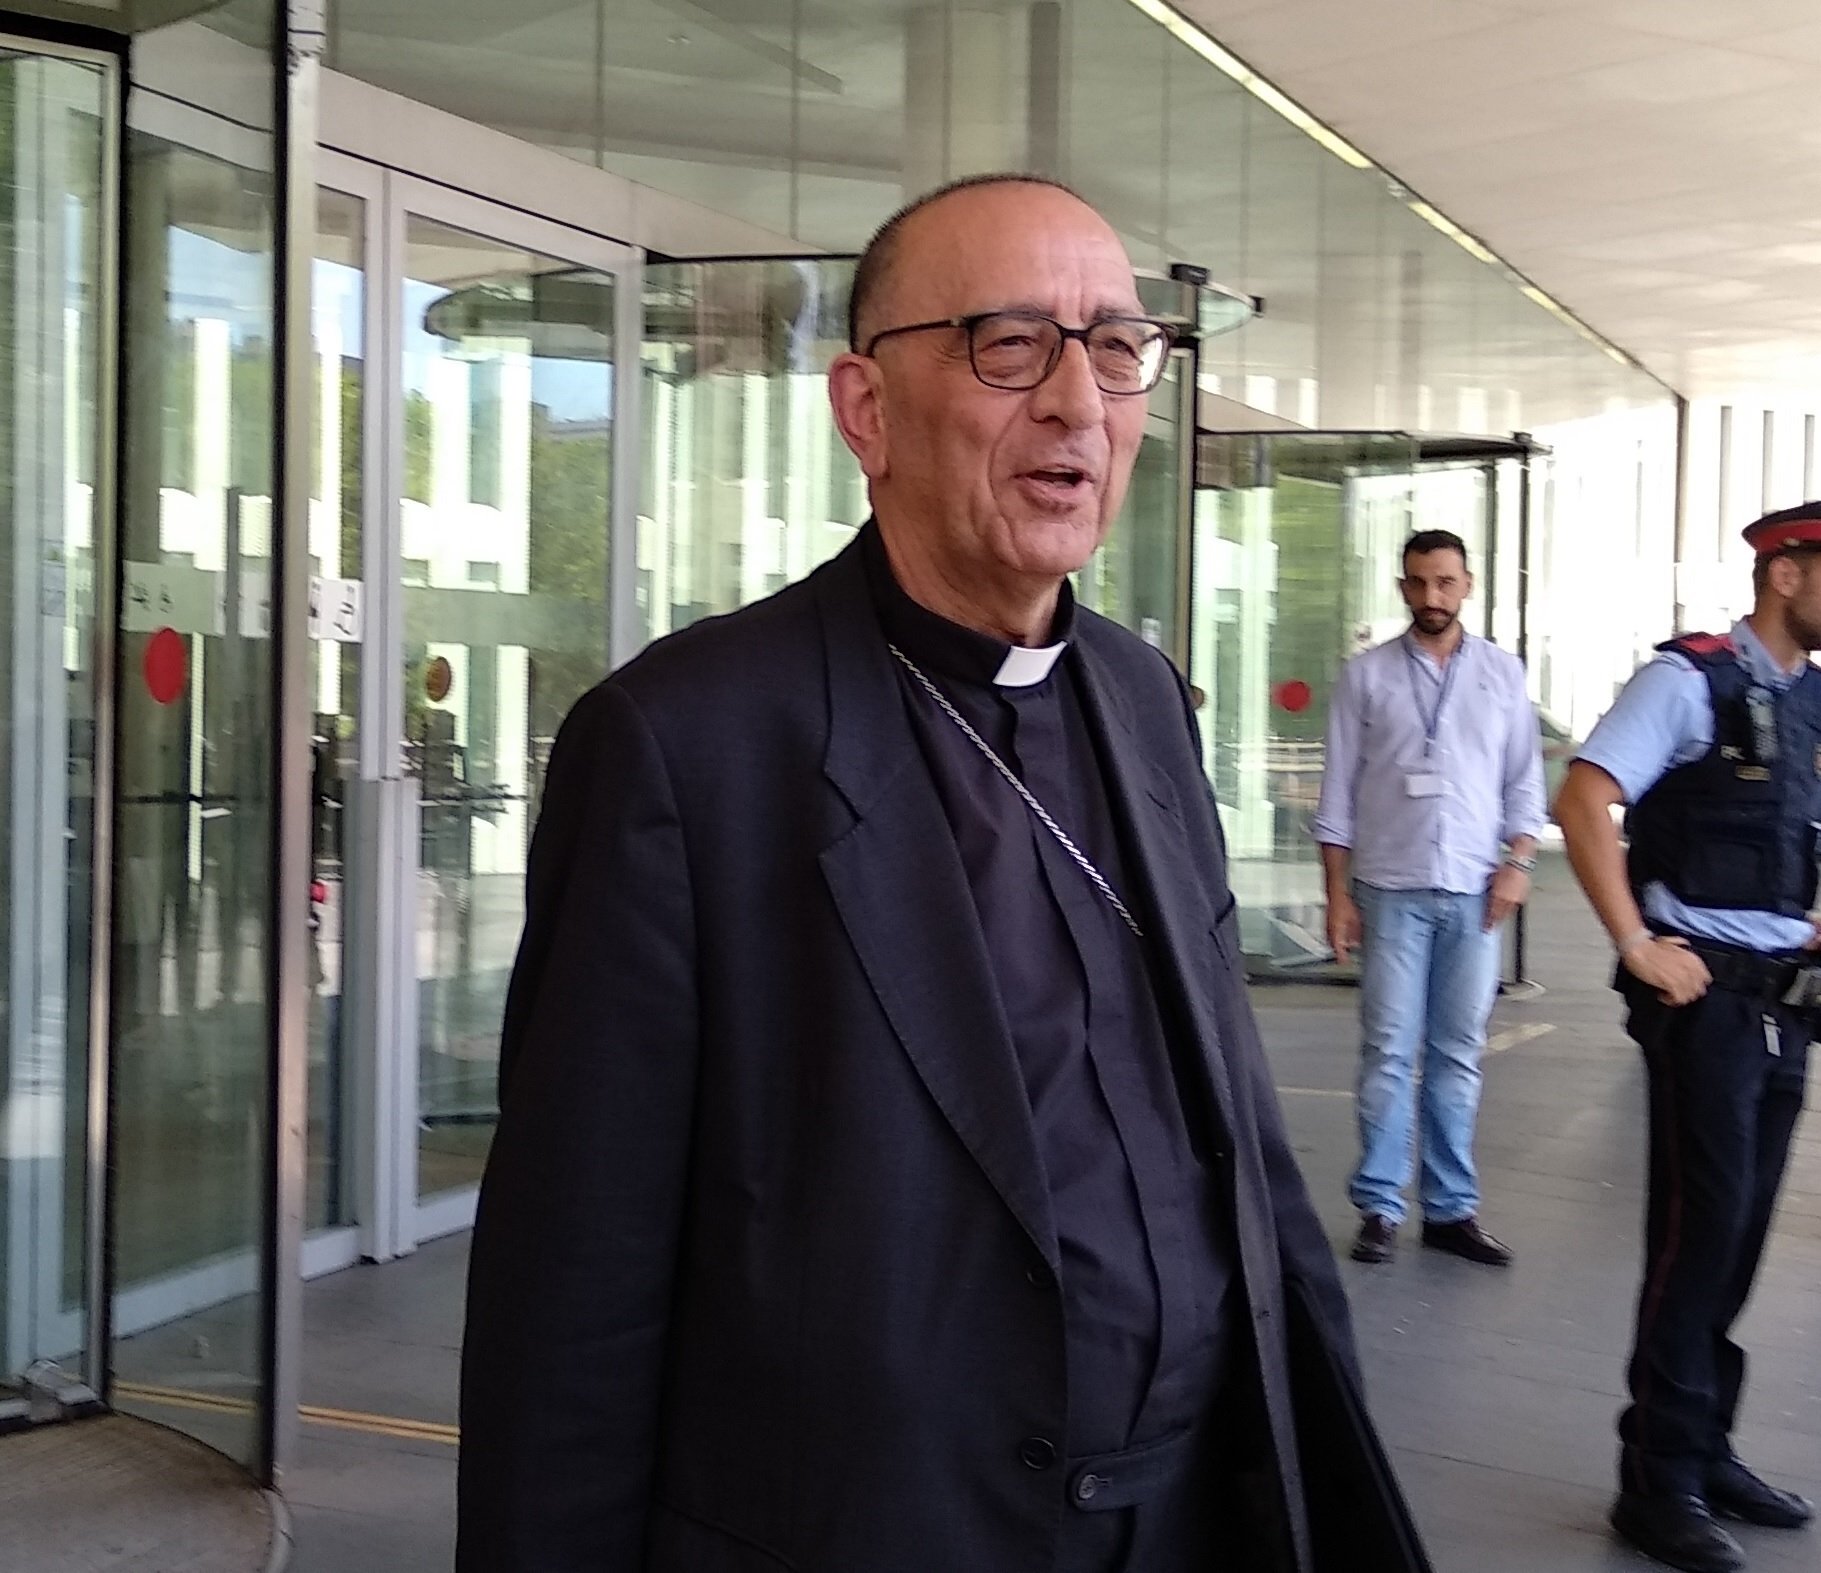 Omella proposa una altra taula de diàleg: entre el Govern espanyol i l'Església